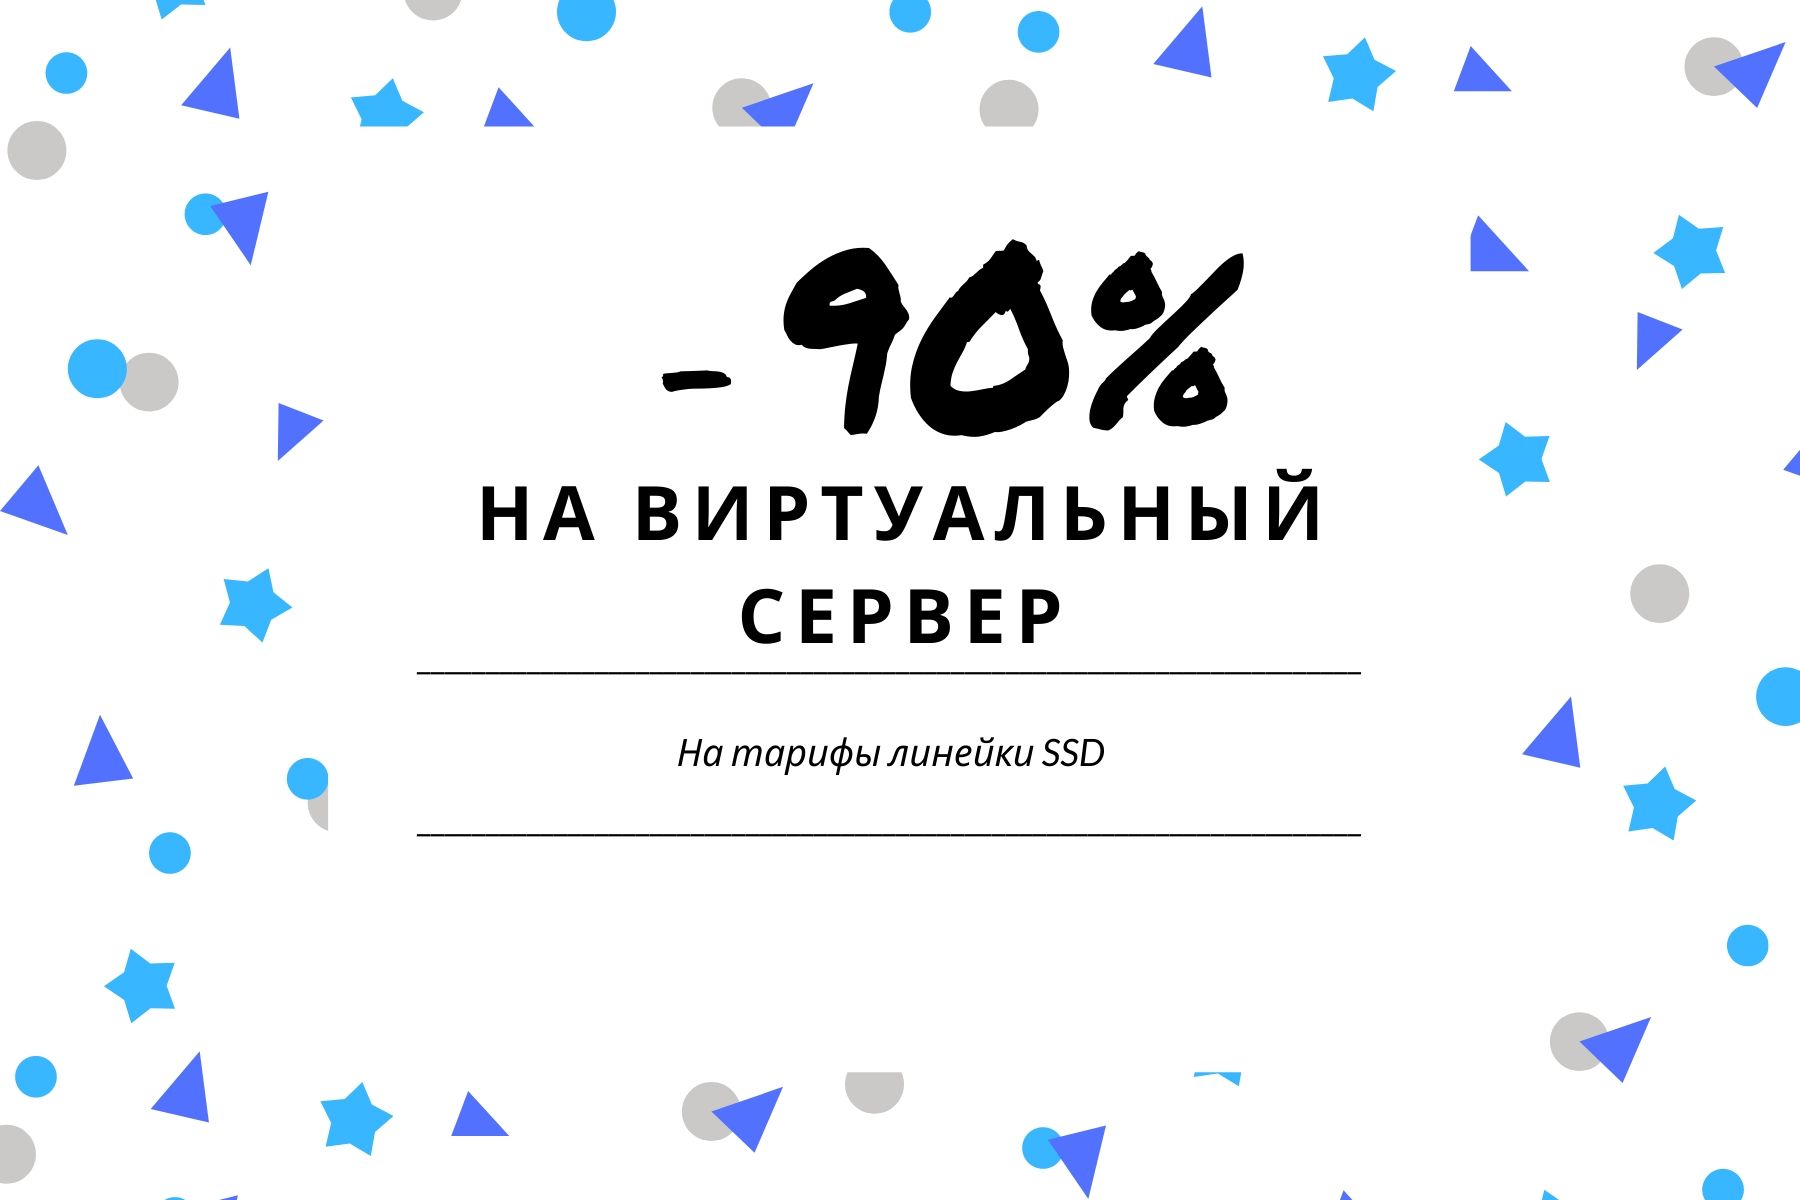 -90% НА ВИРУАЛЬНЫЙ СЕРВЕР